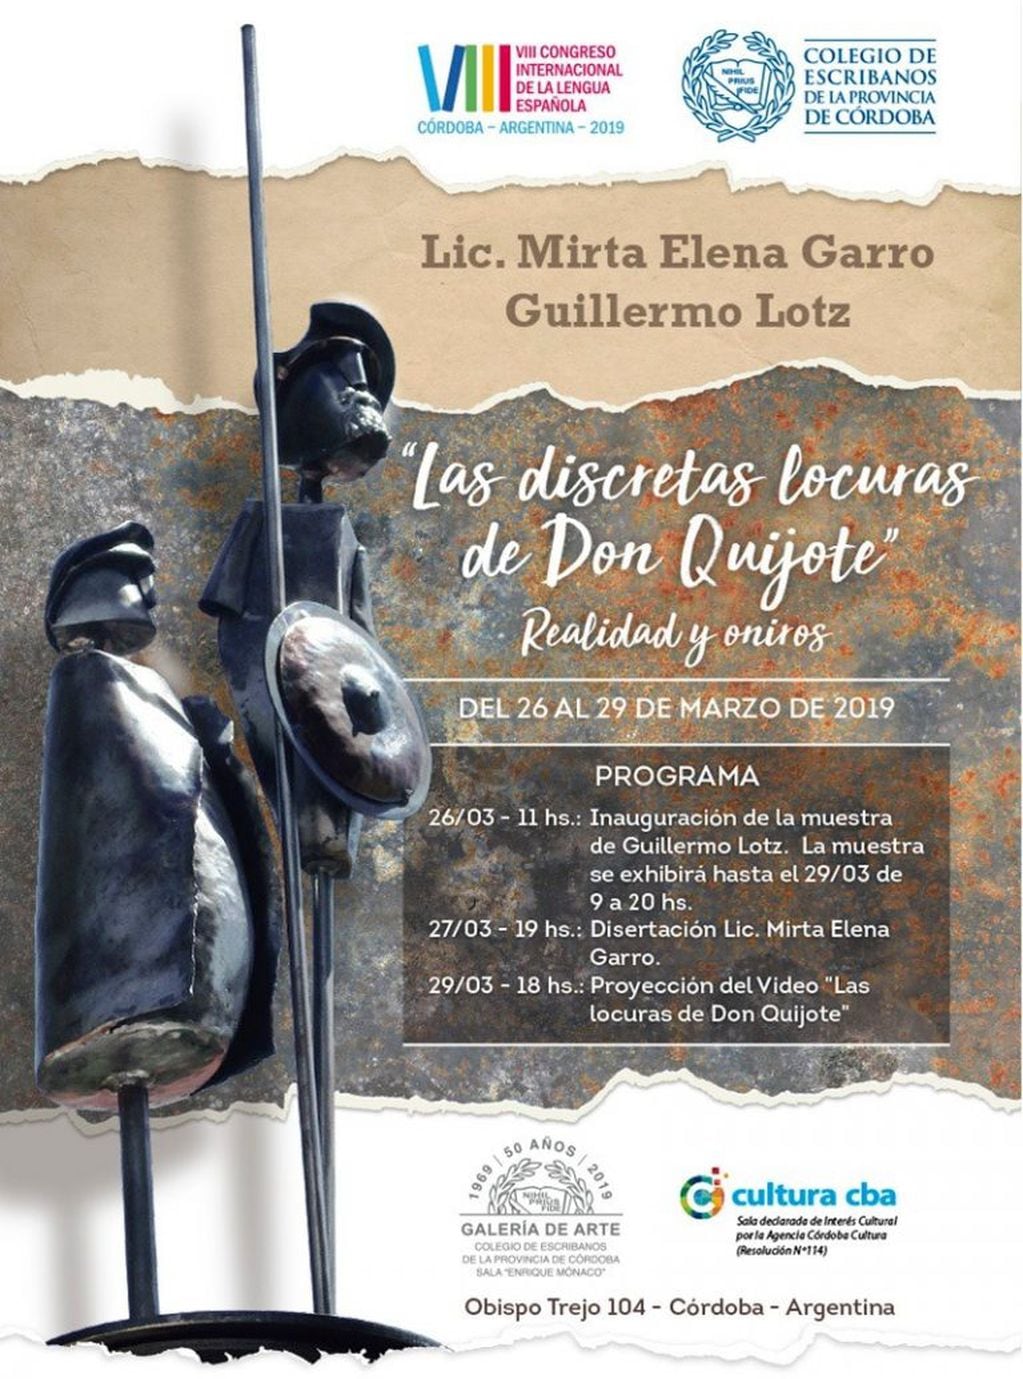 La muestra de Don Quijote de la Mancha en el Colegio de Escribanos de Córdoba.